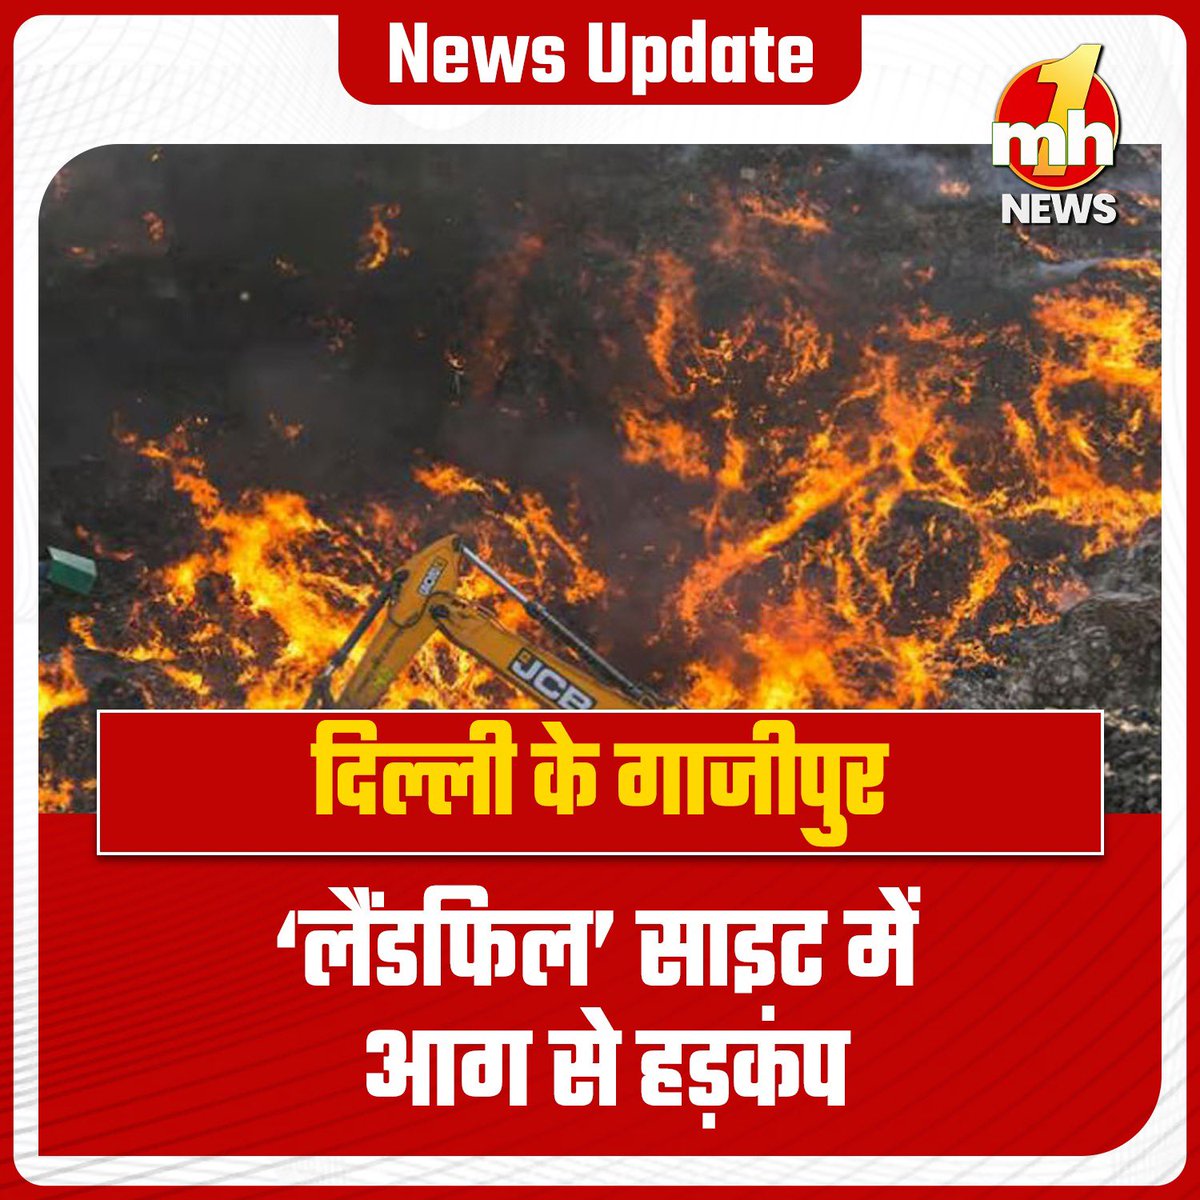 पूर्वी दिल्ली में गाजीपुर 'लैंडफिल' साइट पर रविवार को भीषण आग लग गई। दिल्ली फायर ब्रिगेड सर्विस के एक अधिकारी ने इस बात की जानकारी दी। उन्होंने बताया कि हमें शाम पांच बजकर 22 मिनट पर आग लगने की सूचना मिली। दो दमकल गाड़ियों को काम पर लगाया गया है। आग बुझाने के प्रयास किए जा रहे